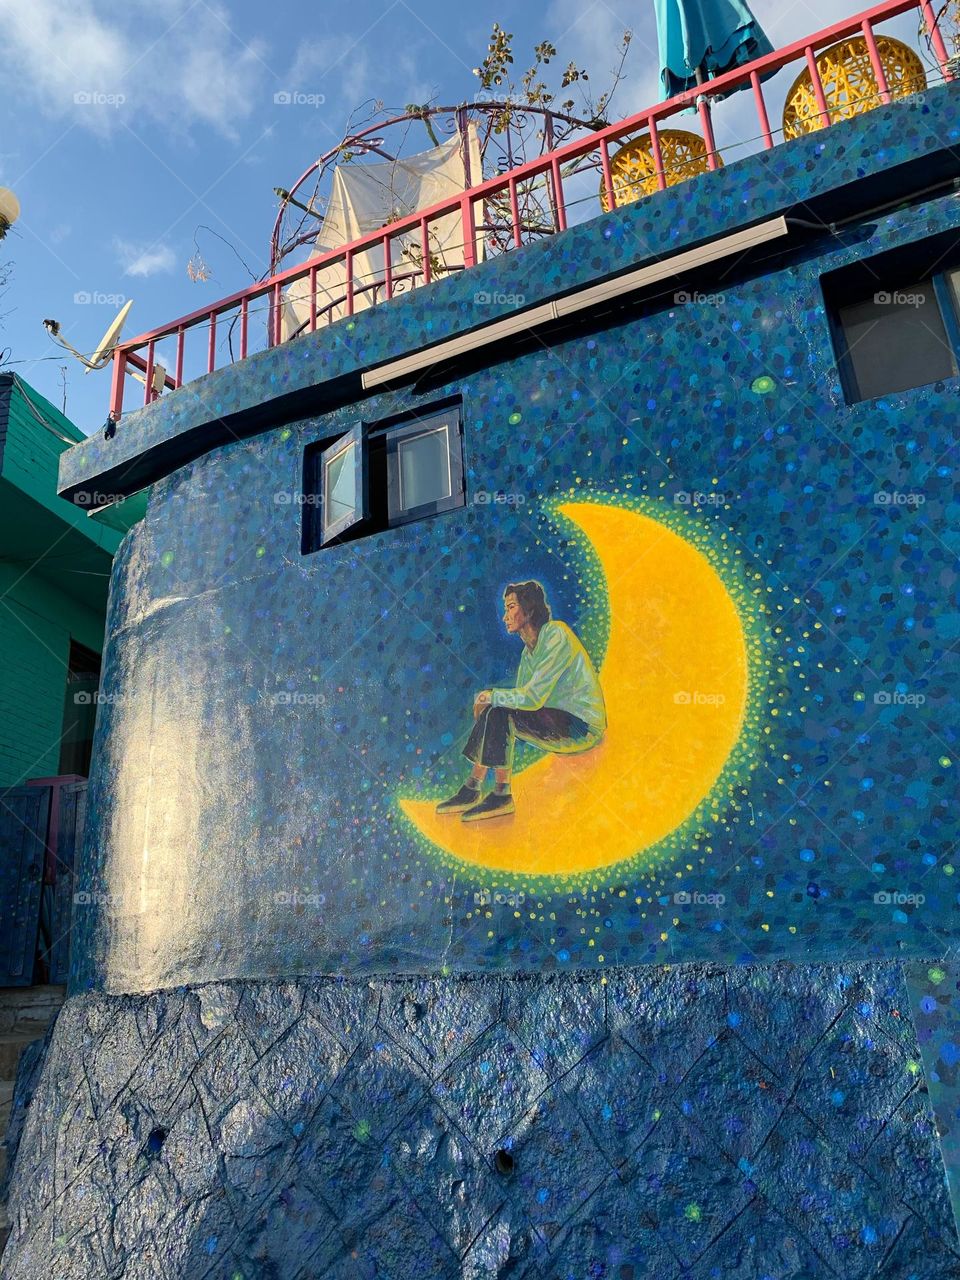 Korea Street Art Sitting on Moon